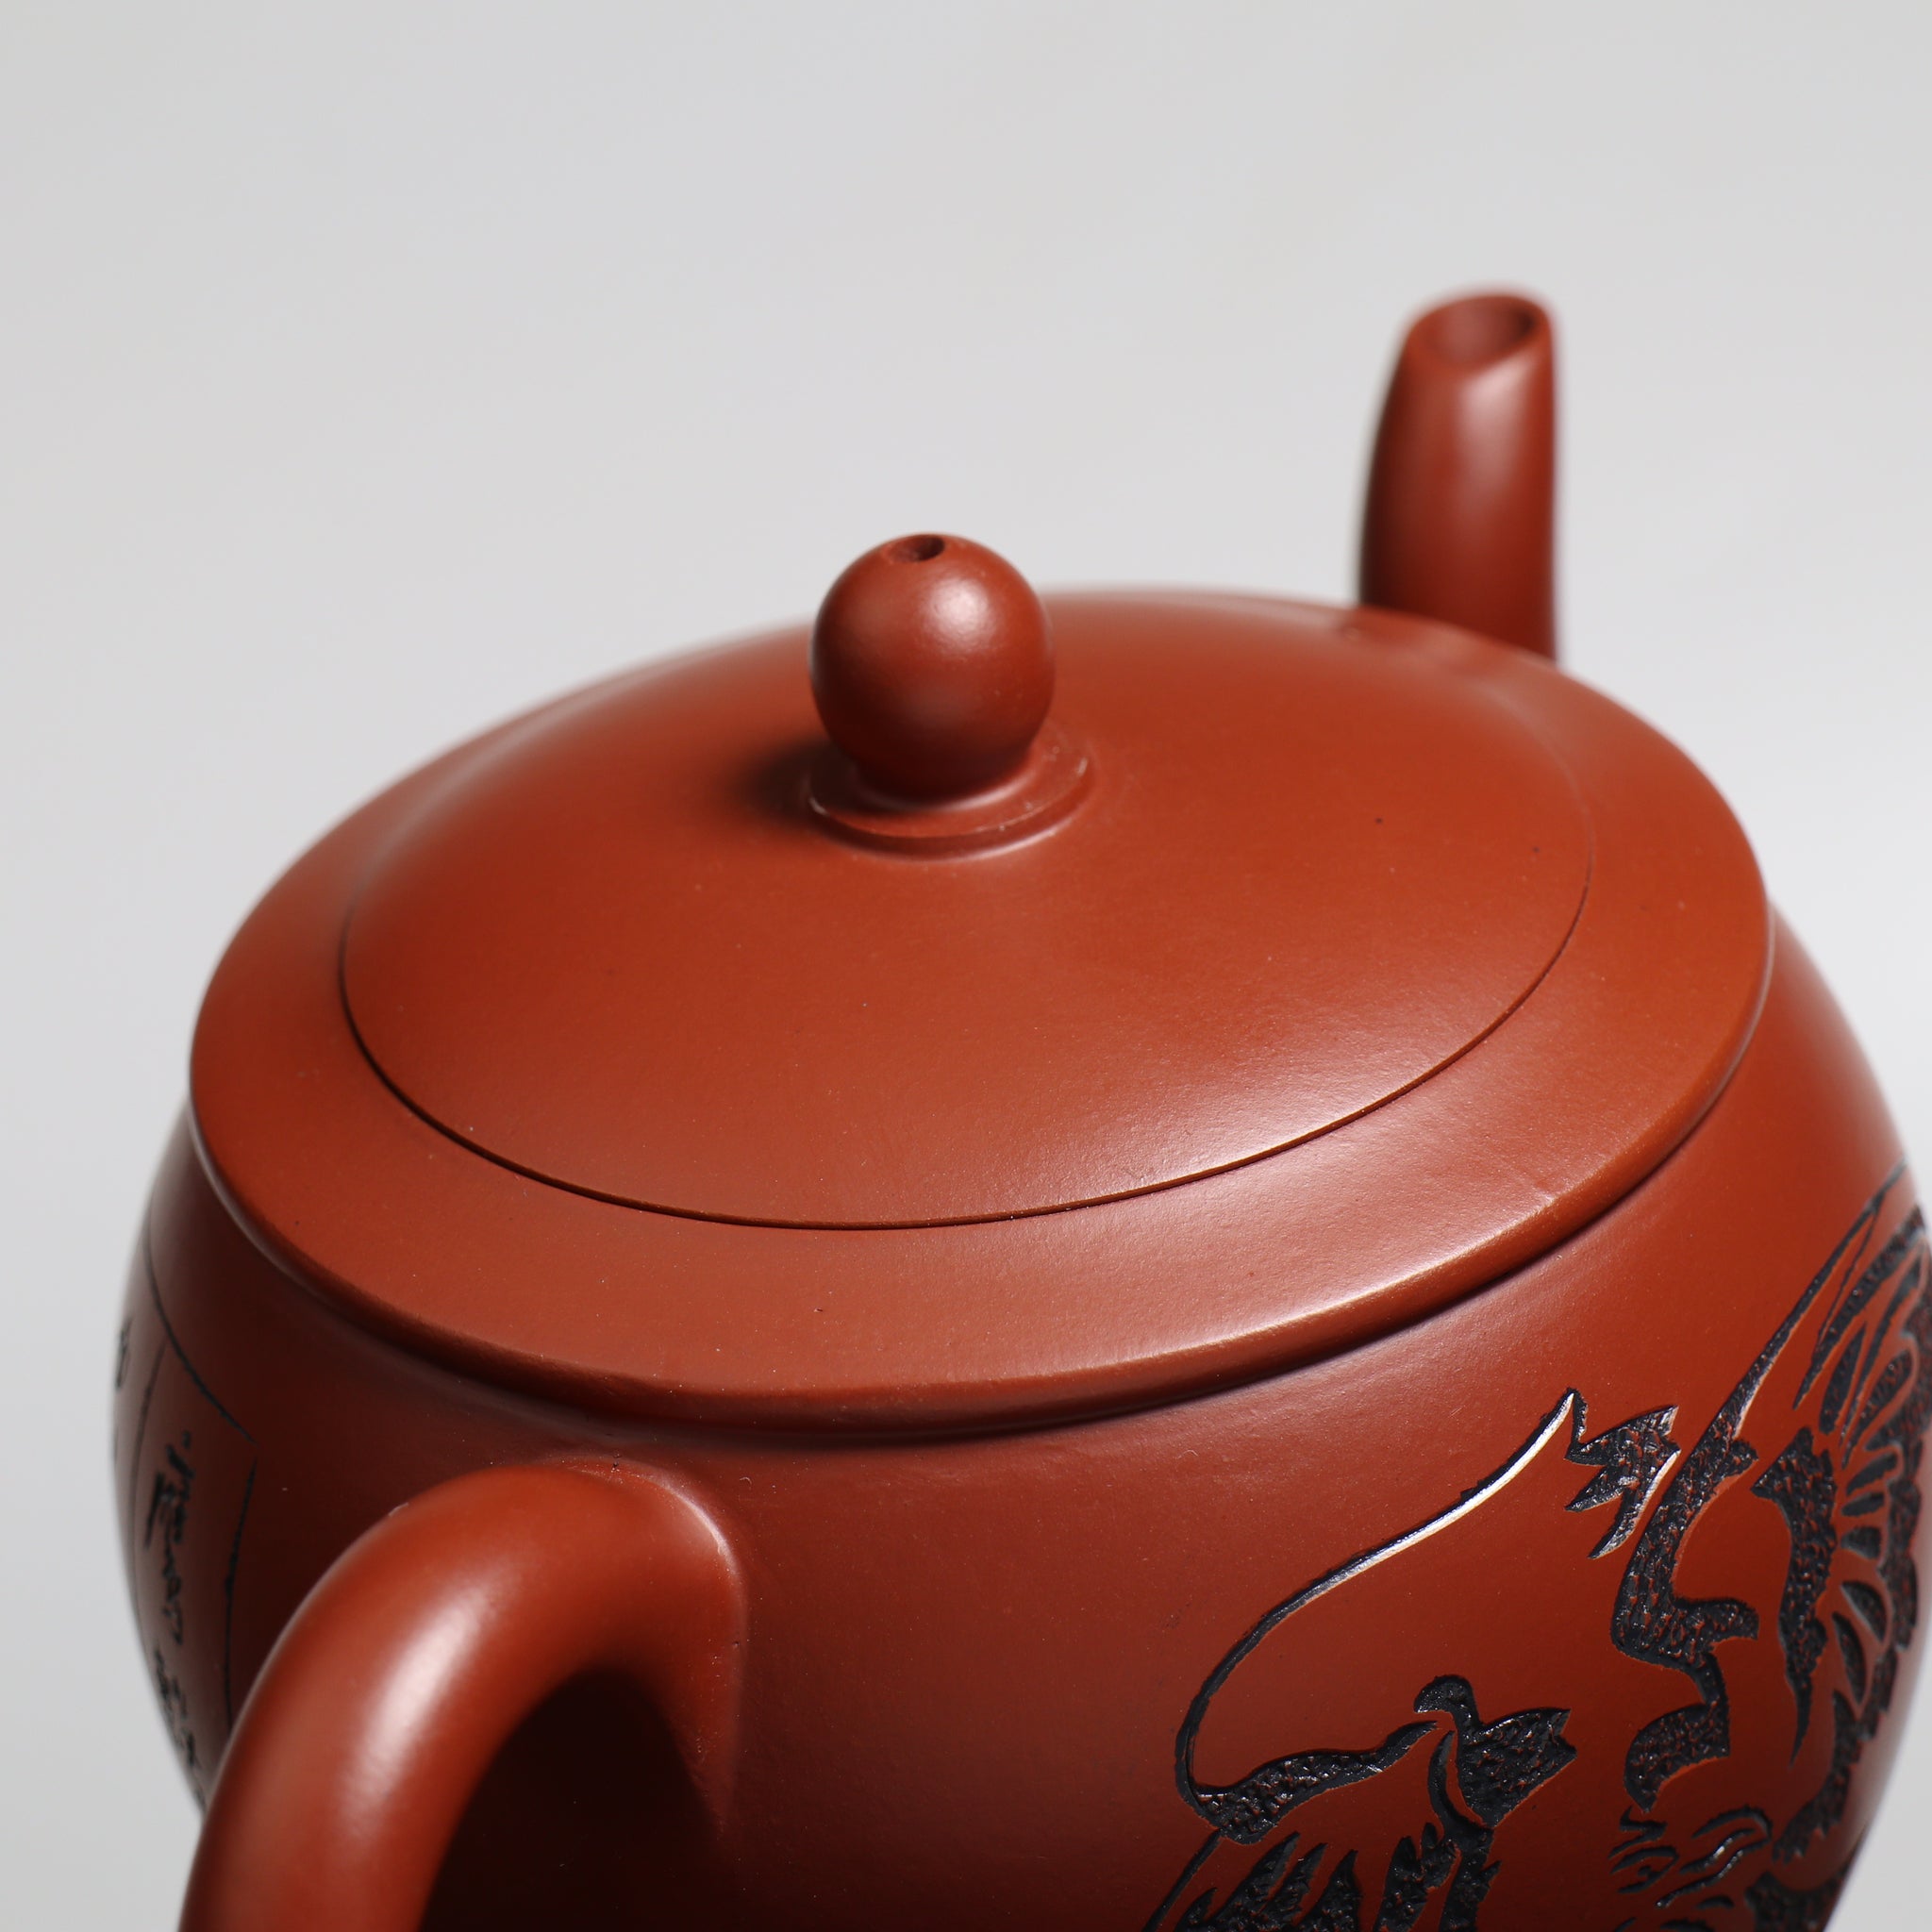 【茗香】大紅袍鳳凰展翅刻畫紫砂茶壺